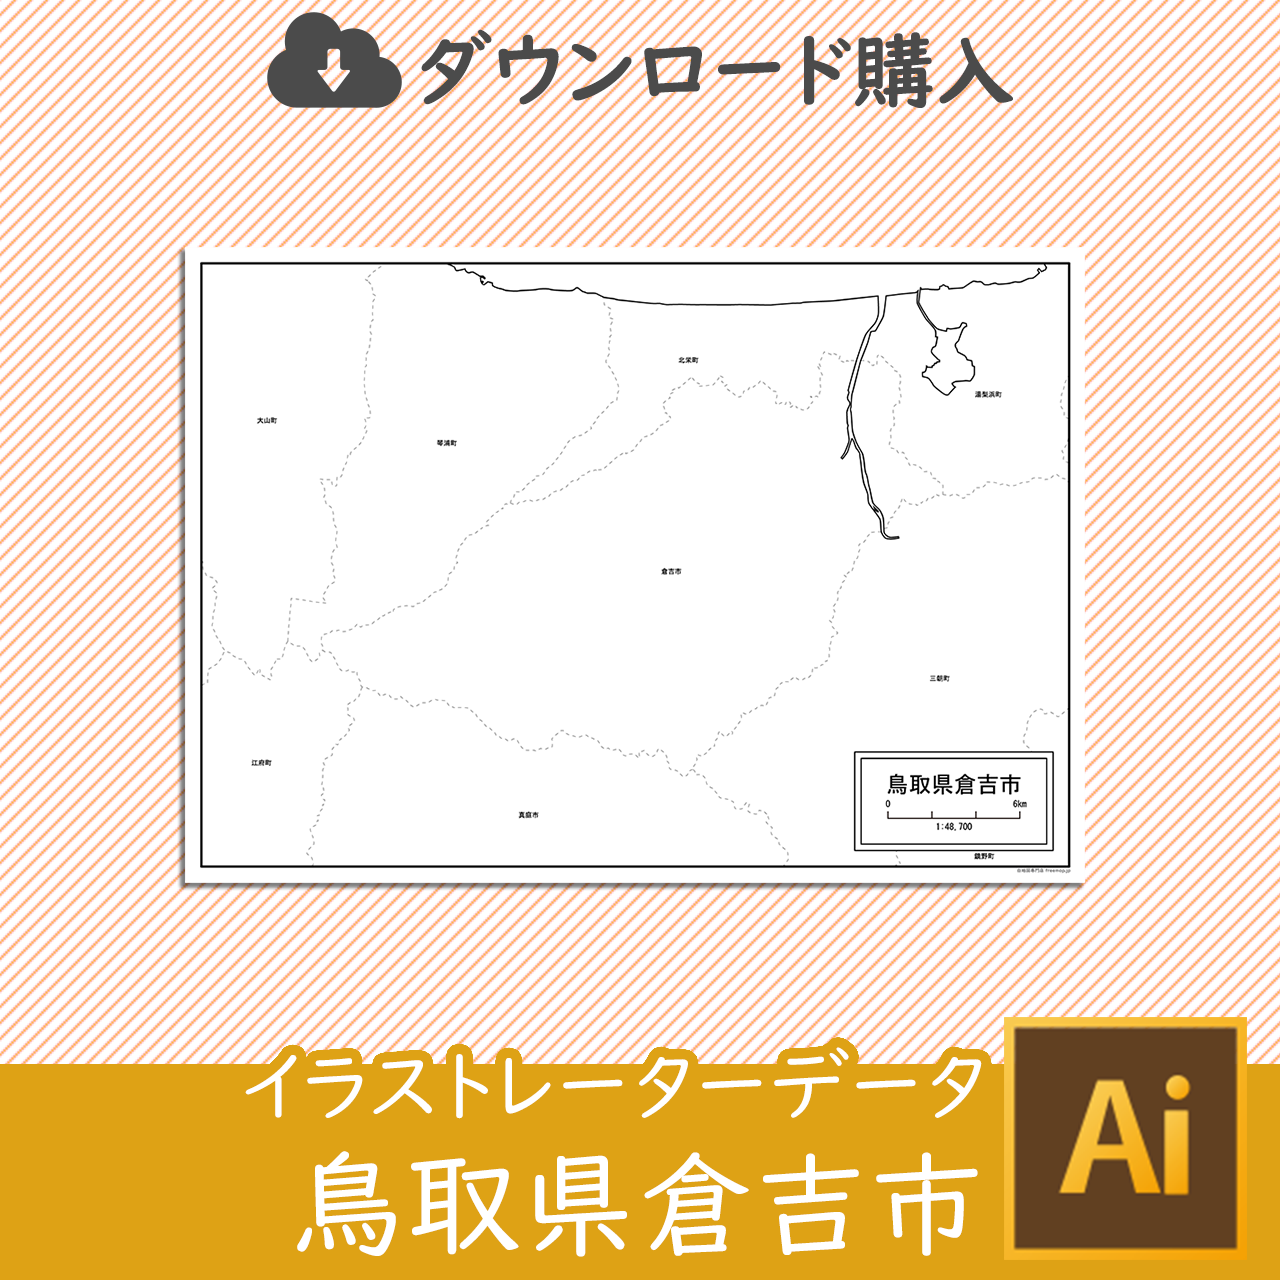 倉吉市のaiデータのサムネイル画像